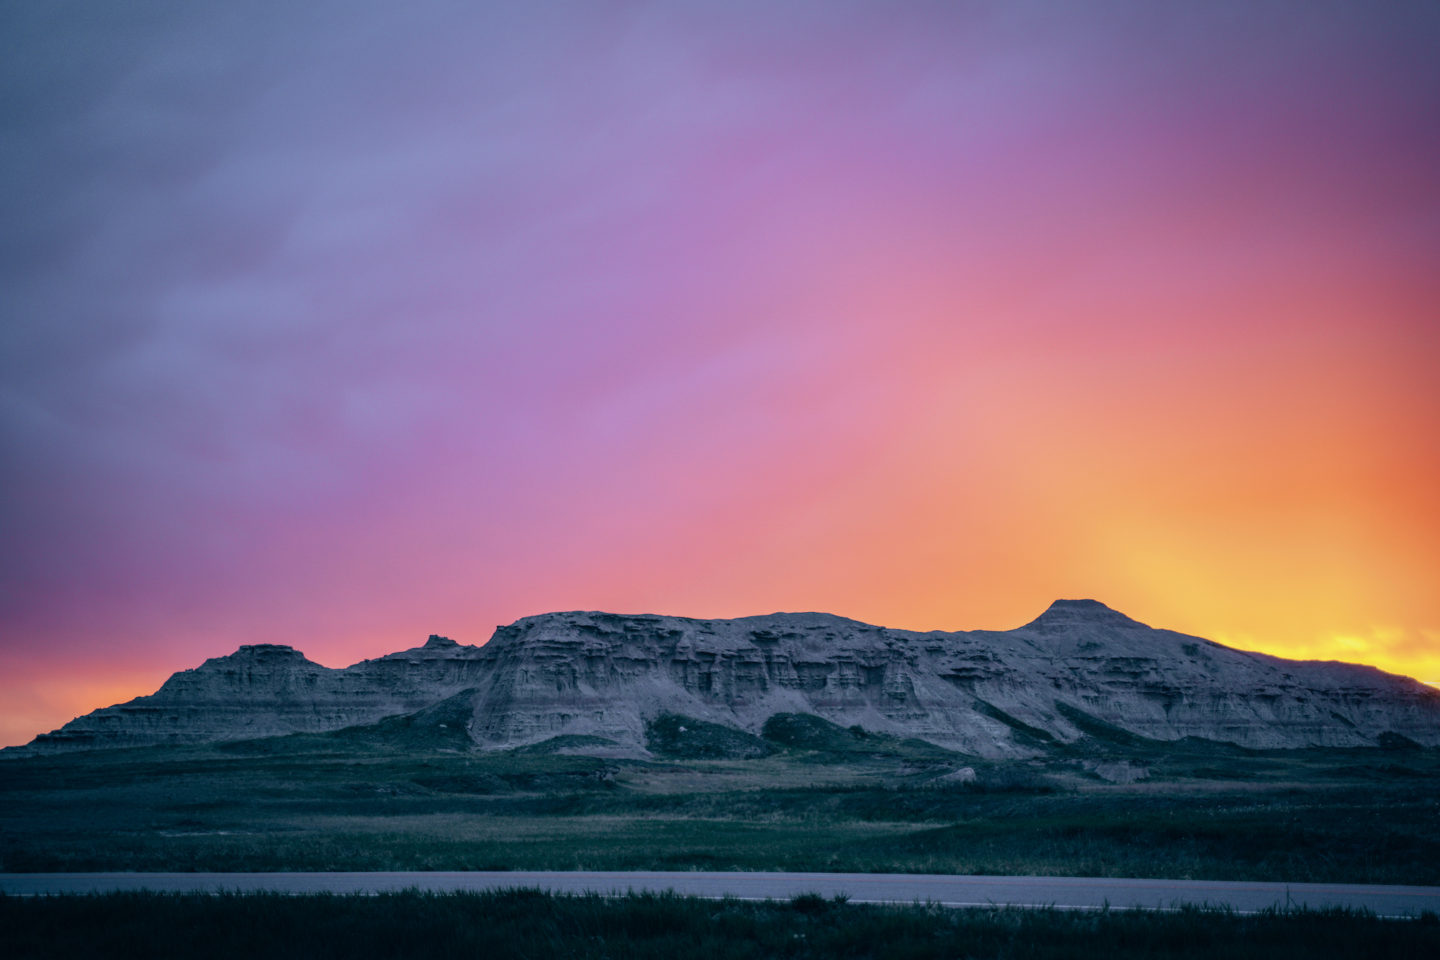 Sunset in Badlands National Park - South Dakota